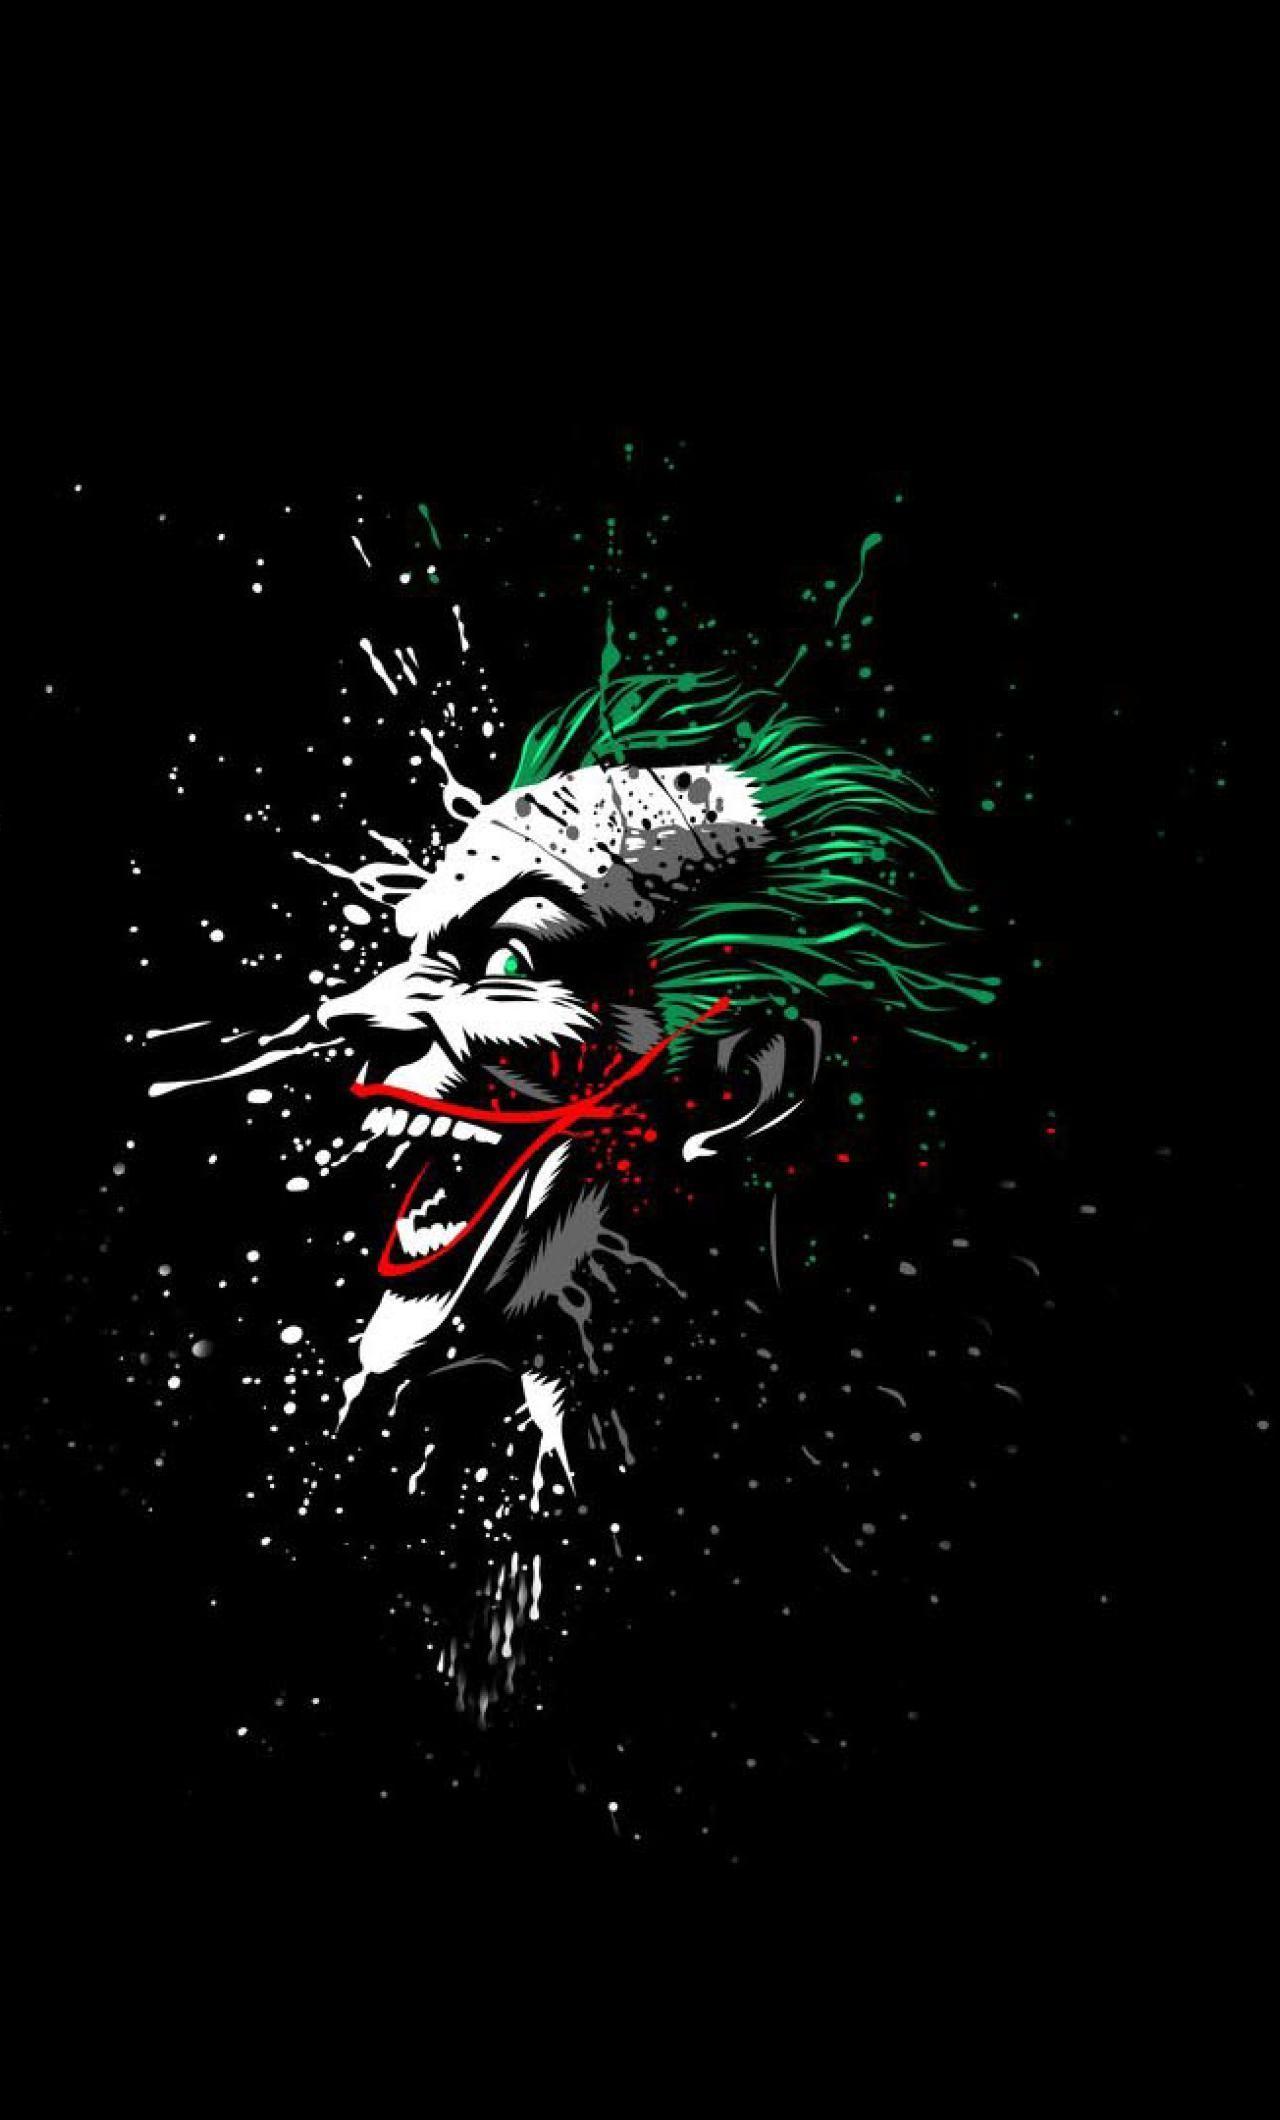 Joker Wallpapers Top Free Joker Backgrounds Wallpaperaccess